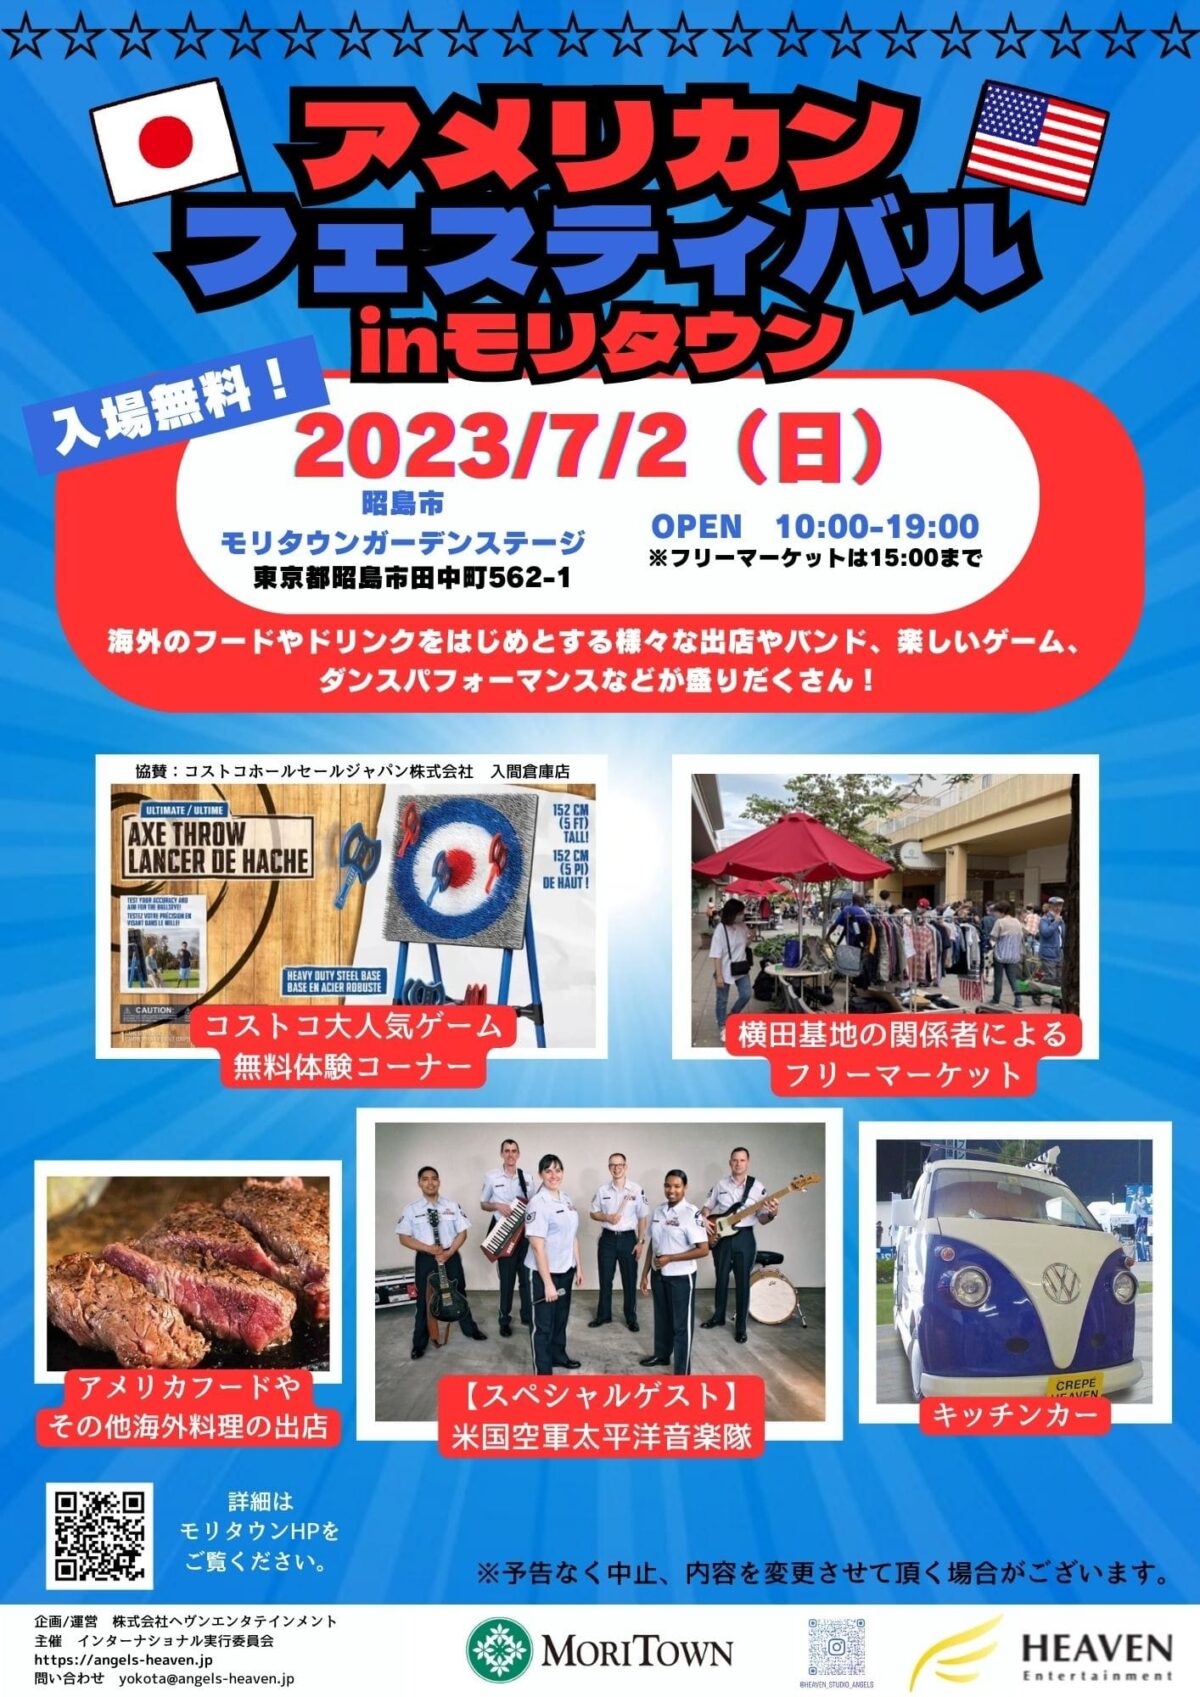 2023年7月2日(日) アメリカンフェスティバル @ 昭島・モリタウン ガーデンステージ